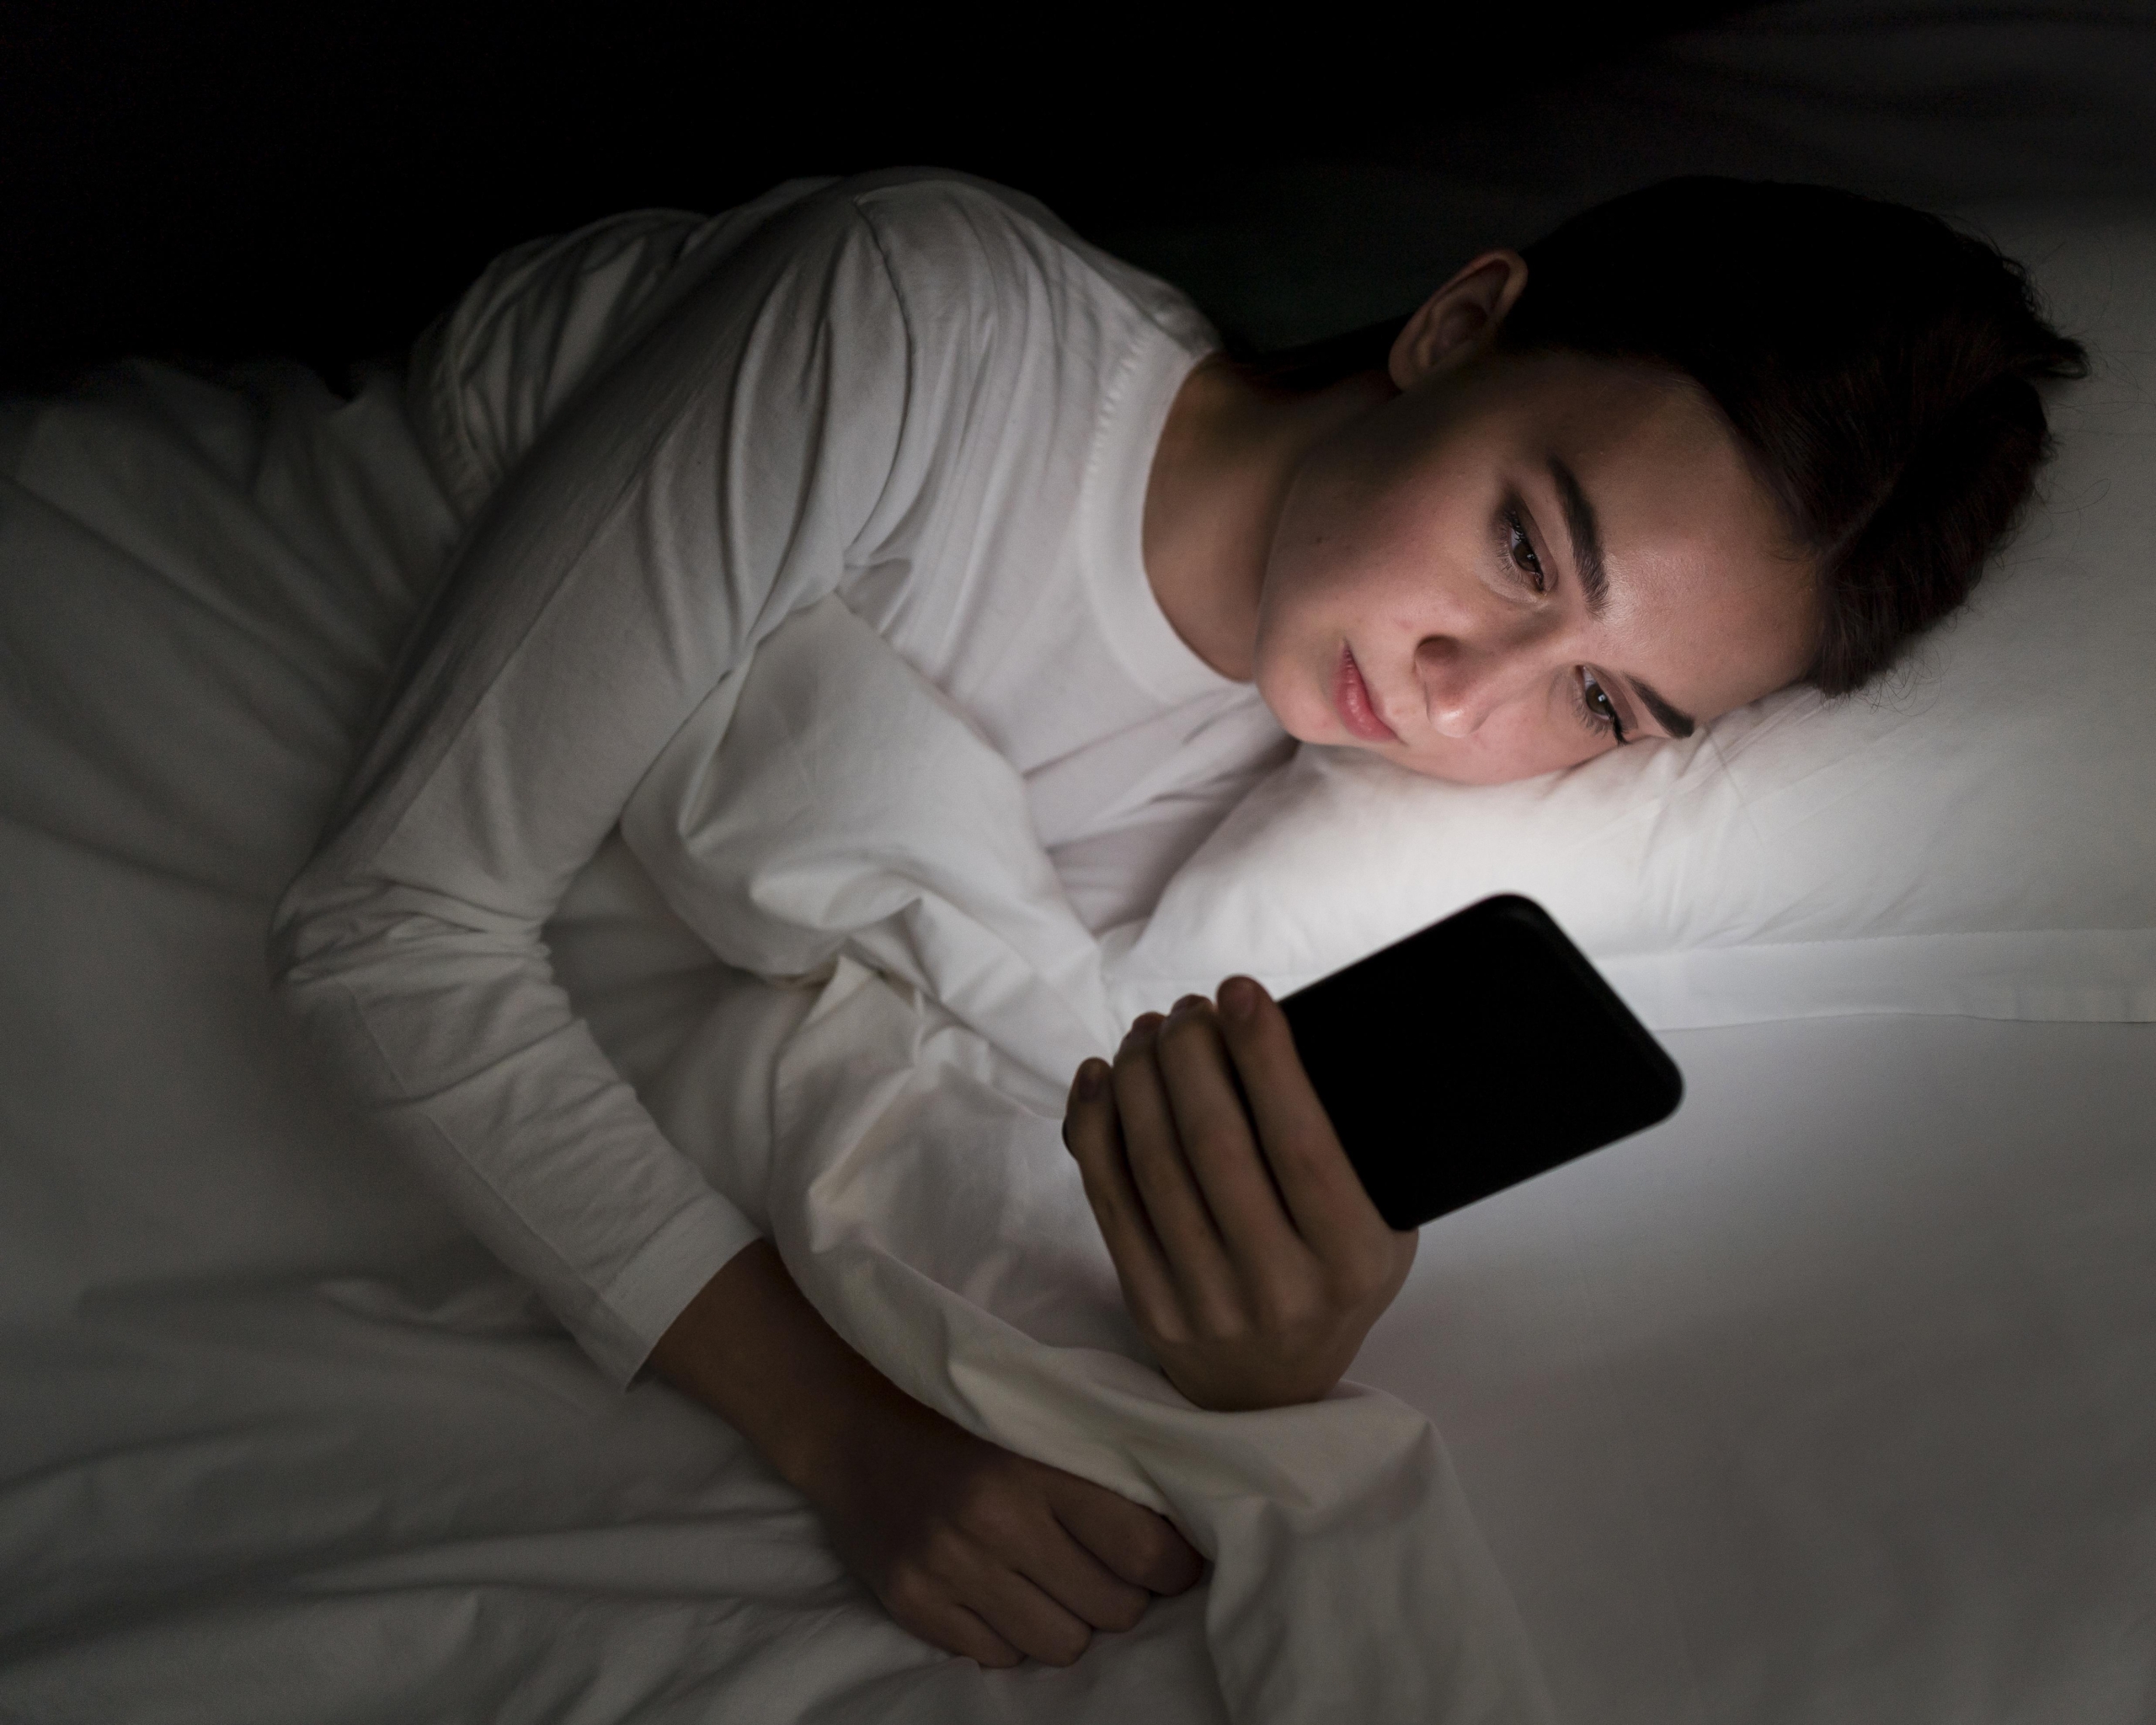 Trước khi đi ngủ nên tránh tiếp xúc với ánh sáng xanh để giảm tình mất ngủ kéo dài